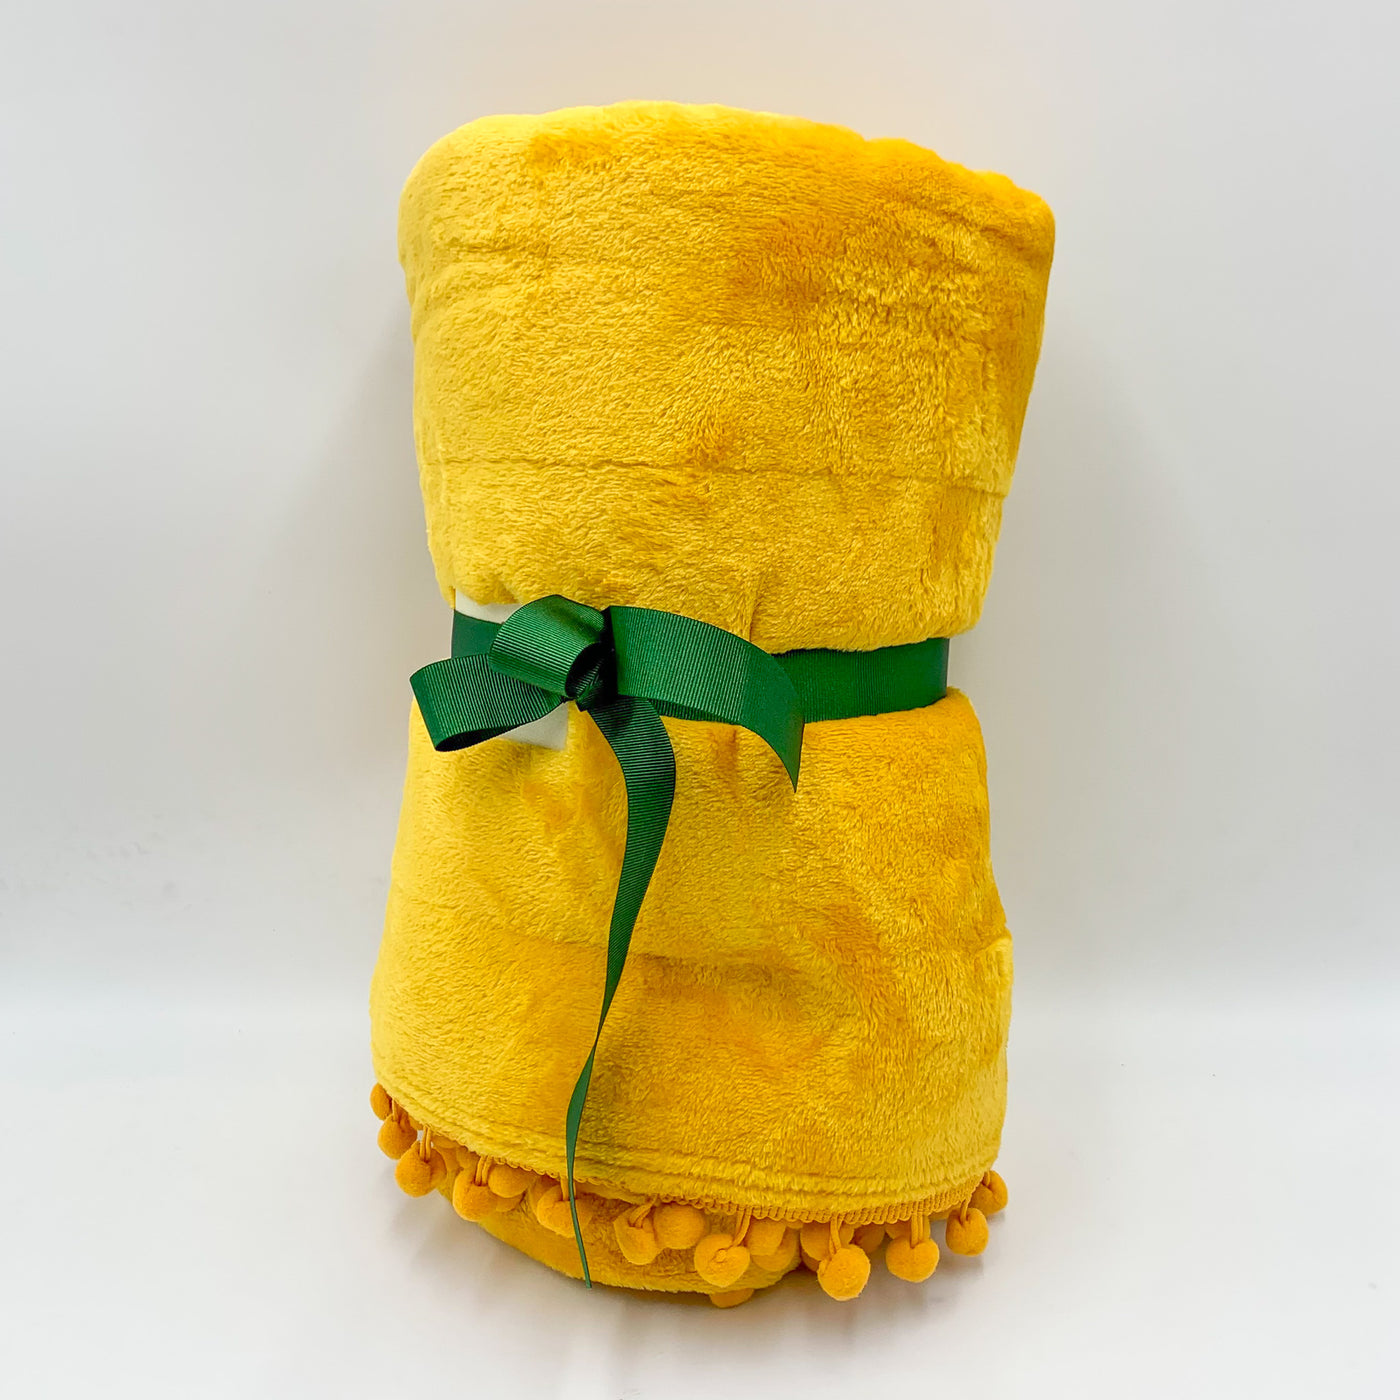 Textil Mantas y plaids Fibras sintéticas Amarillo